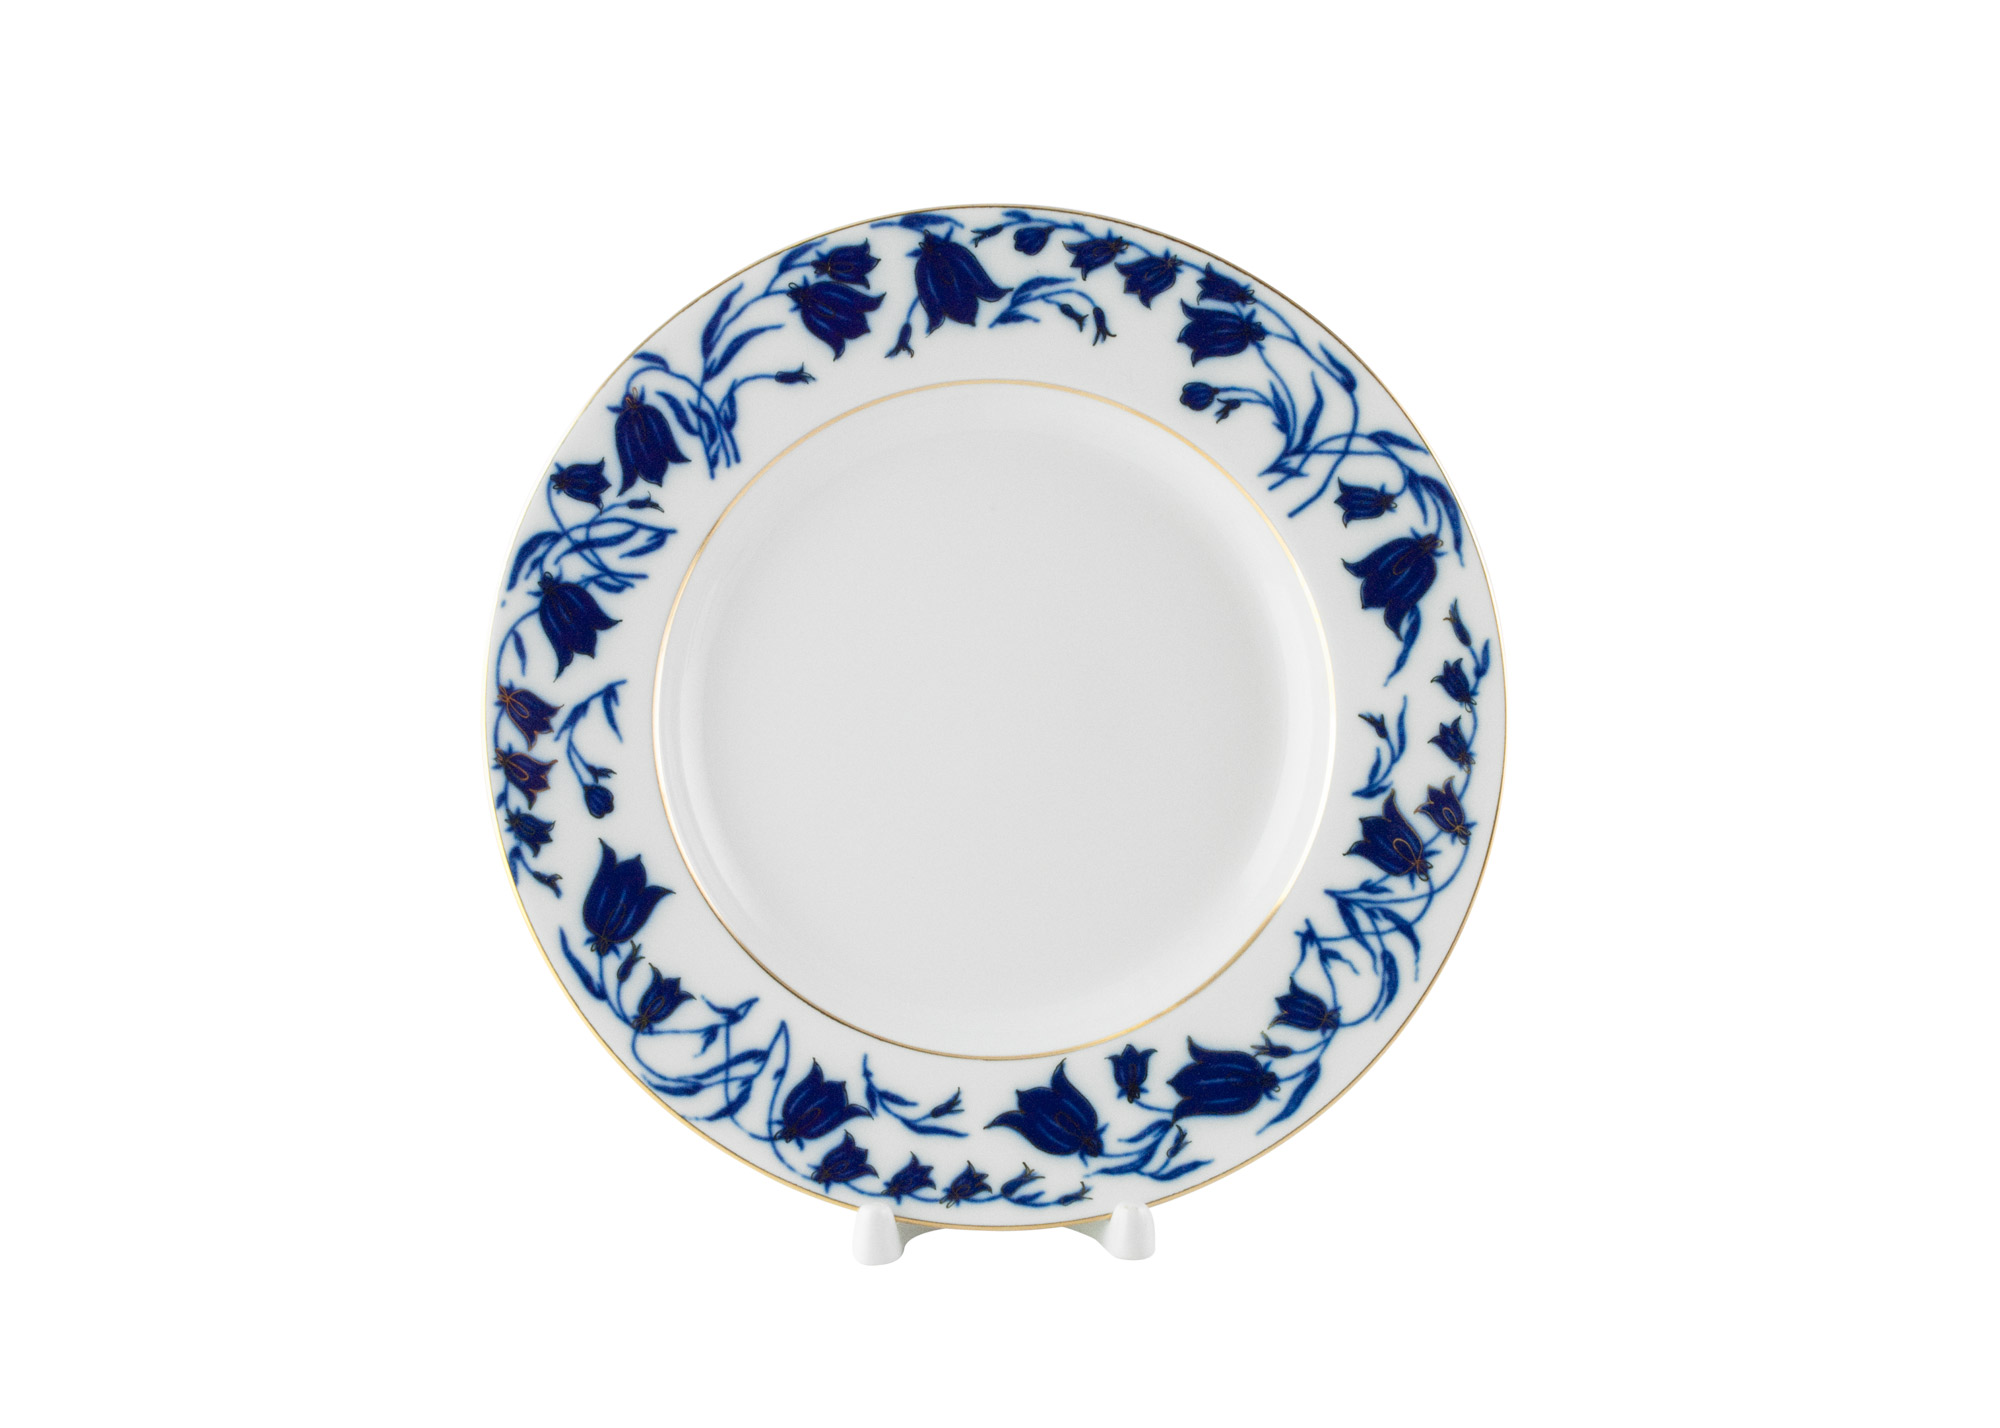 Buy Blue Bells Dinner Plate, 9.5" at GoldenCockerel.com